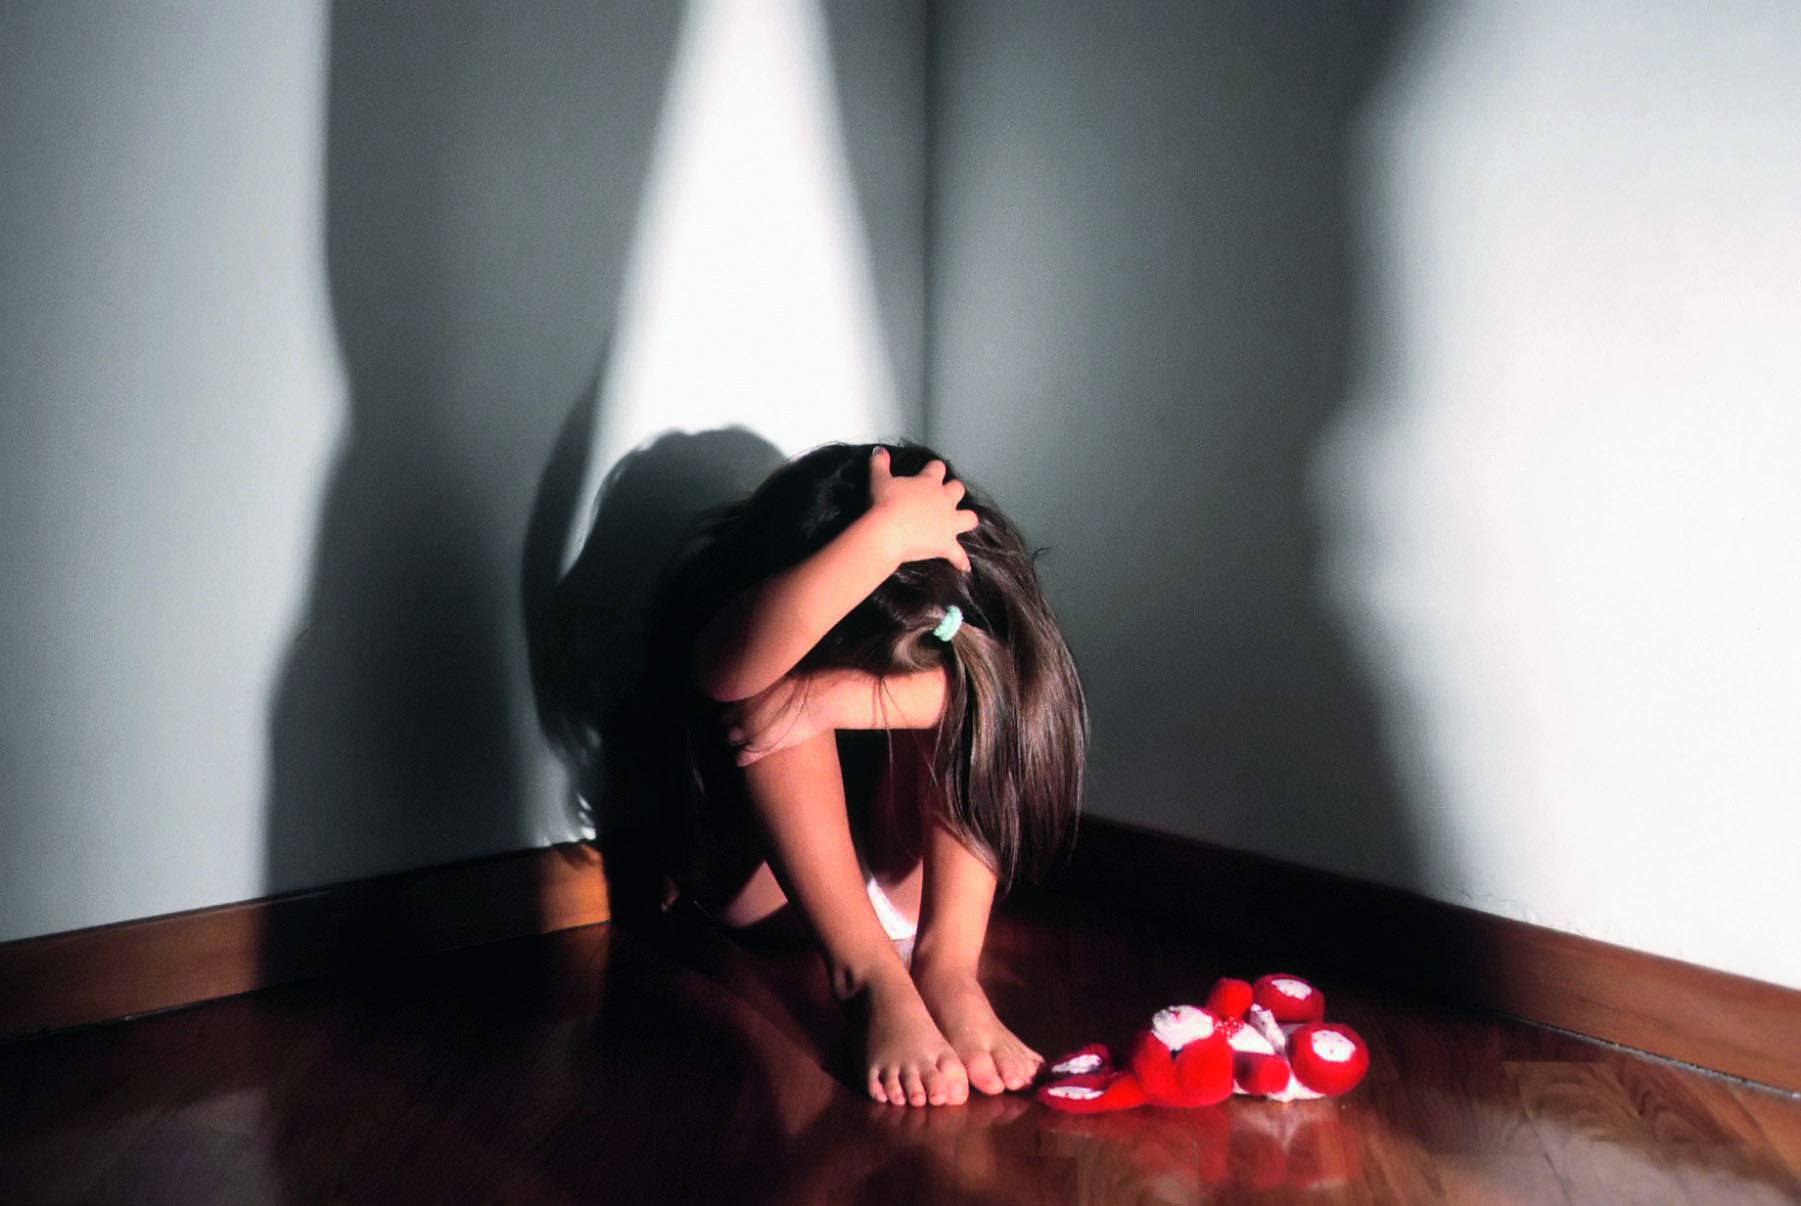 Violenza sessuale sulle figlie adottive: in manette orco a Santa Teresa di Riva